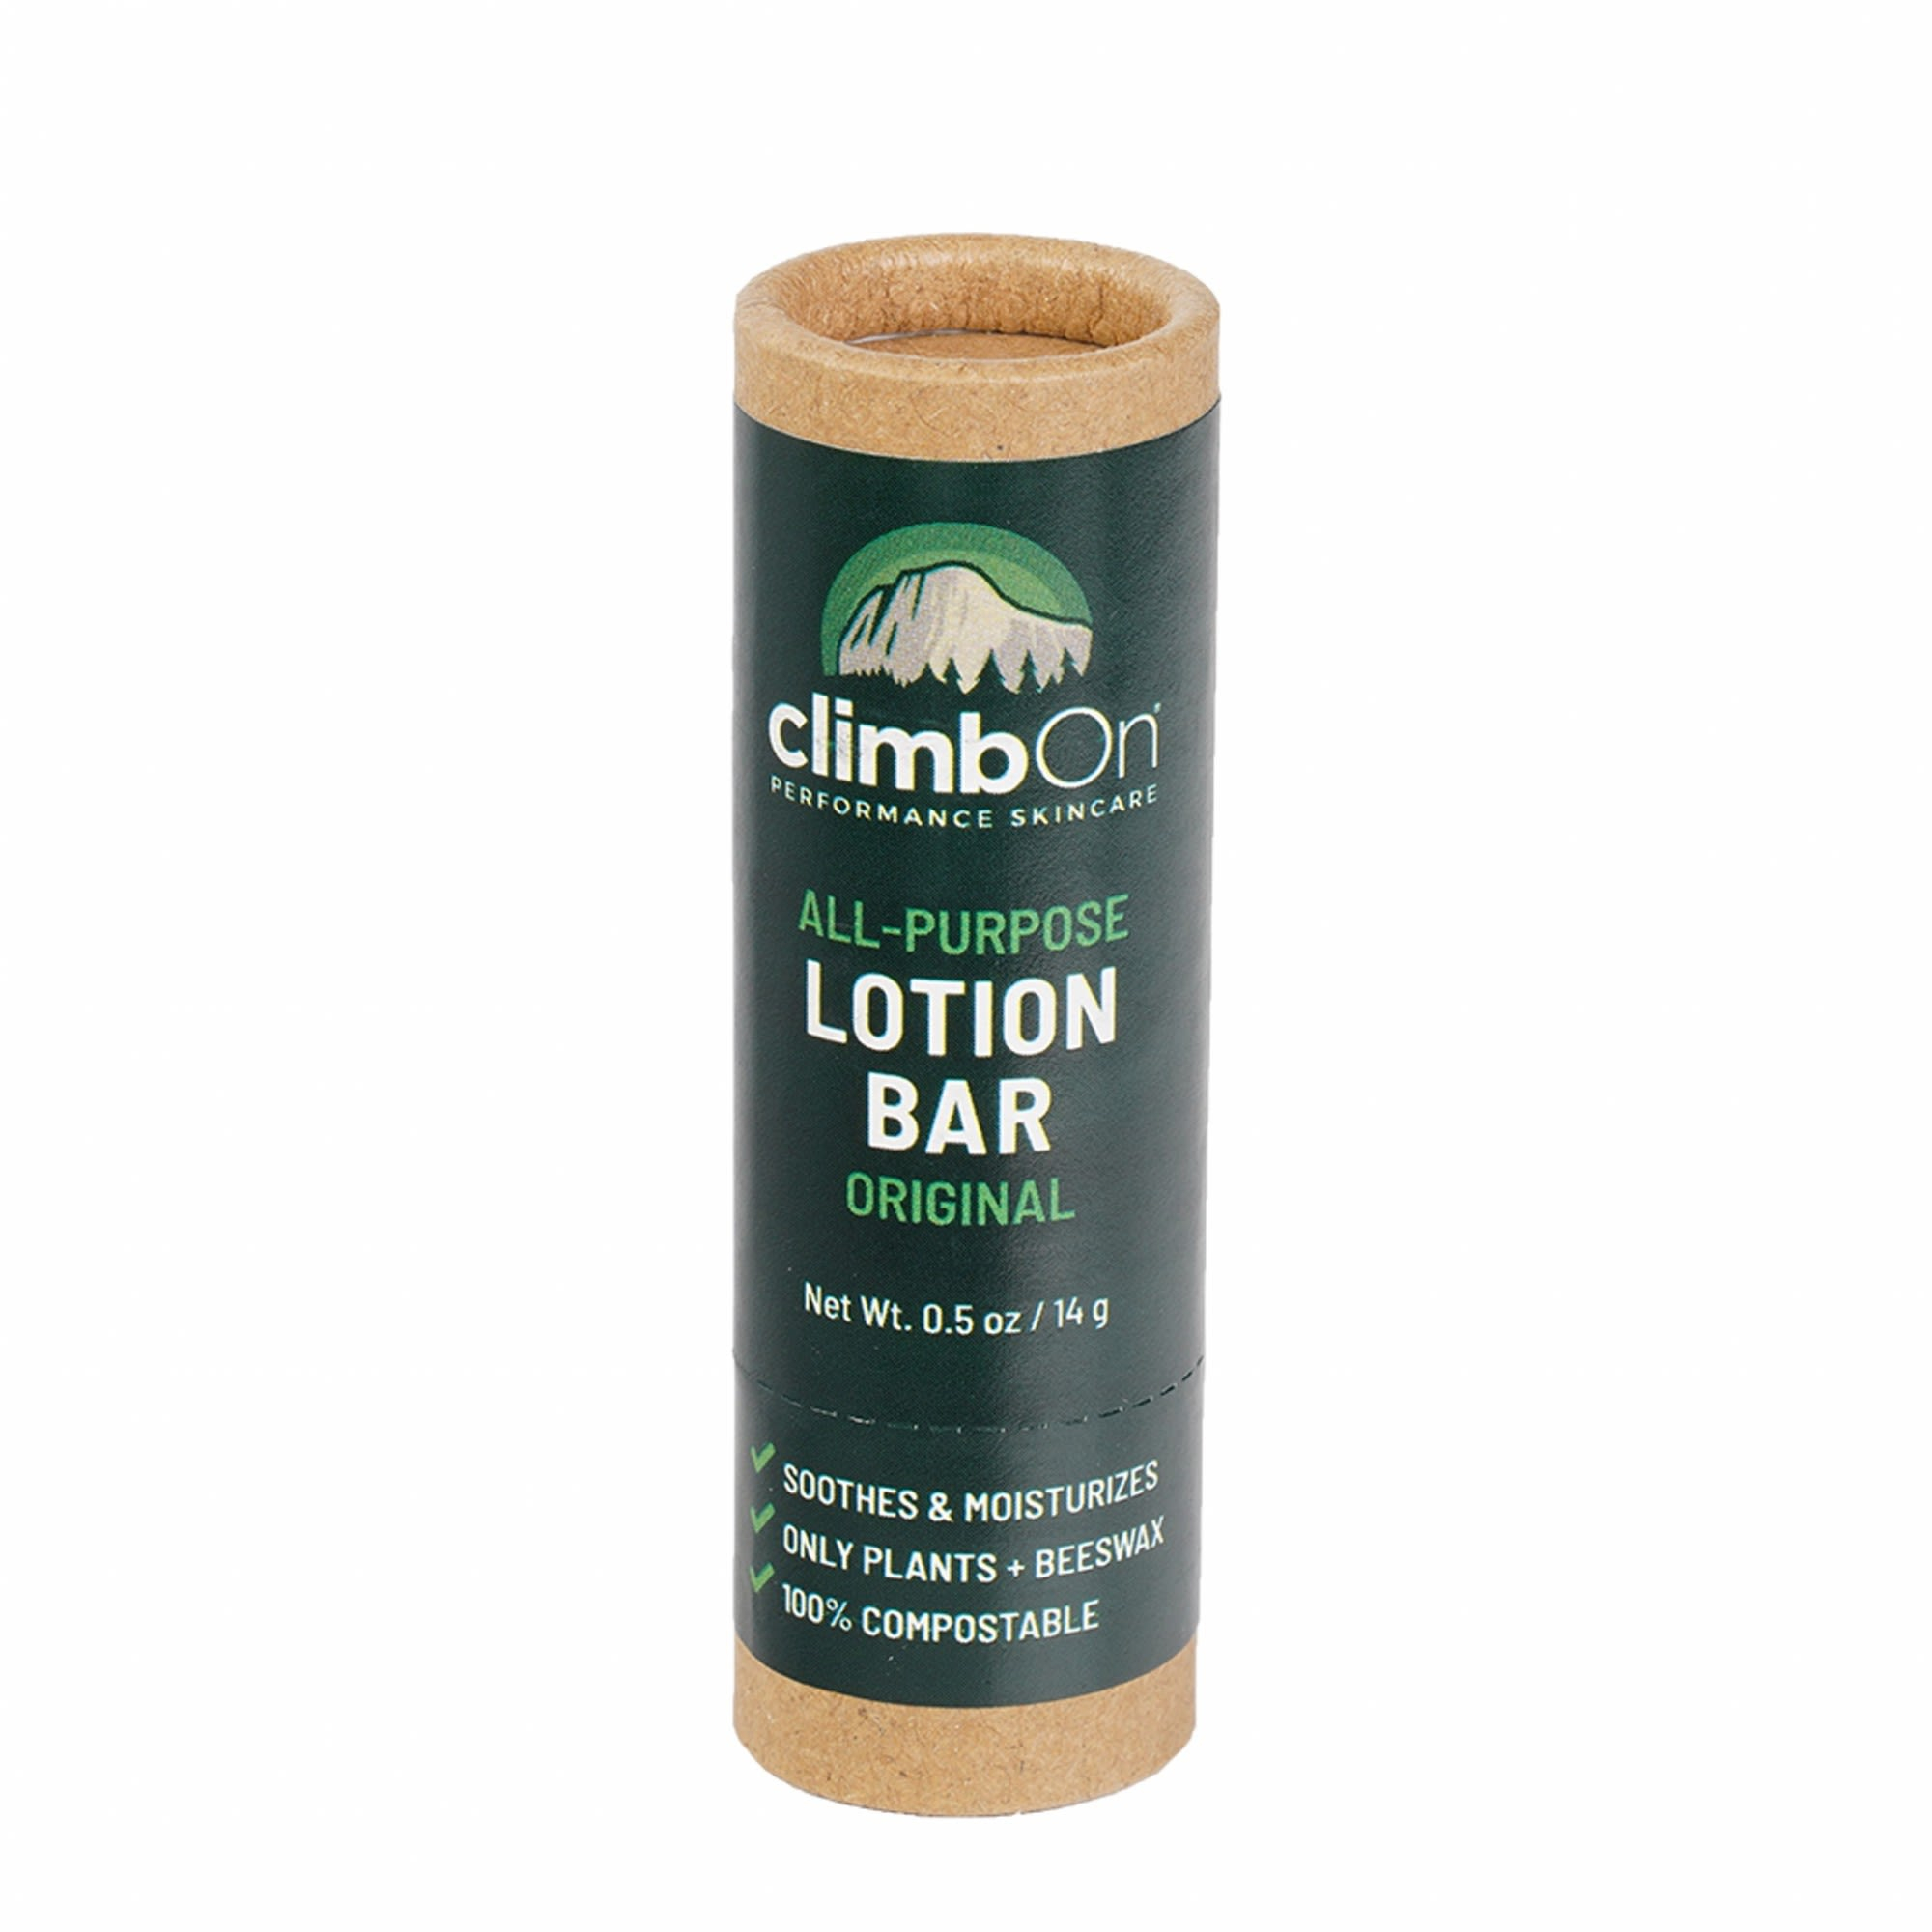 ClimbOn Lotion Bar Original 14